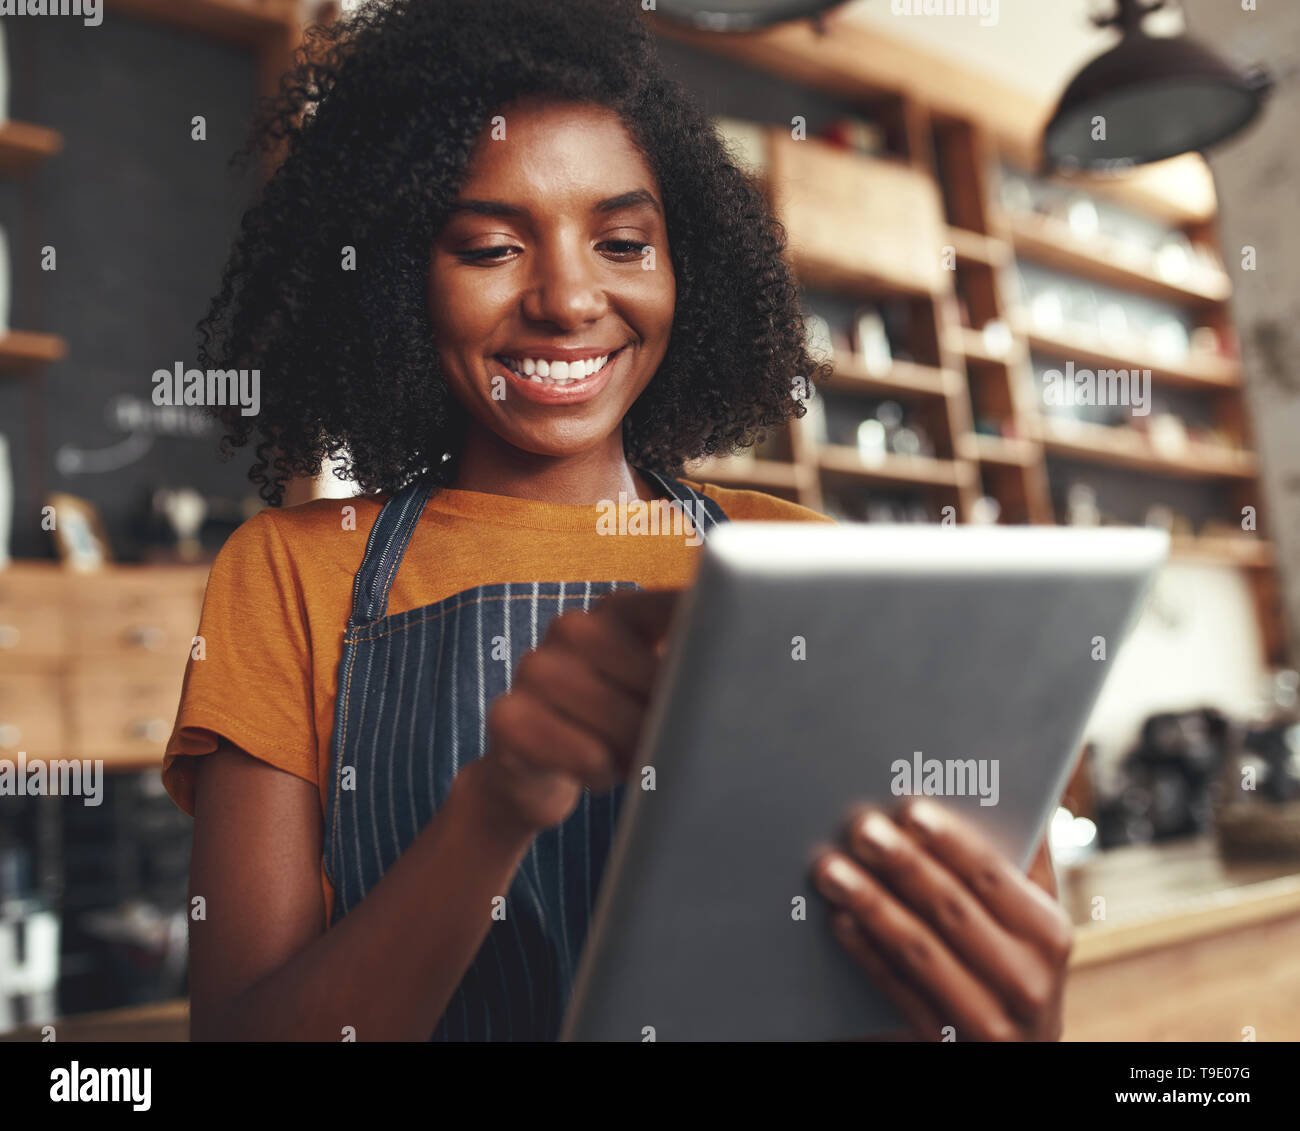 Female cafe owner using digital tablet Banque D'Images